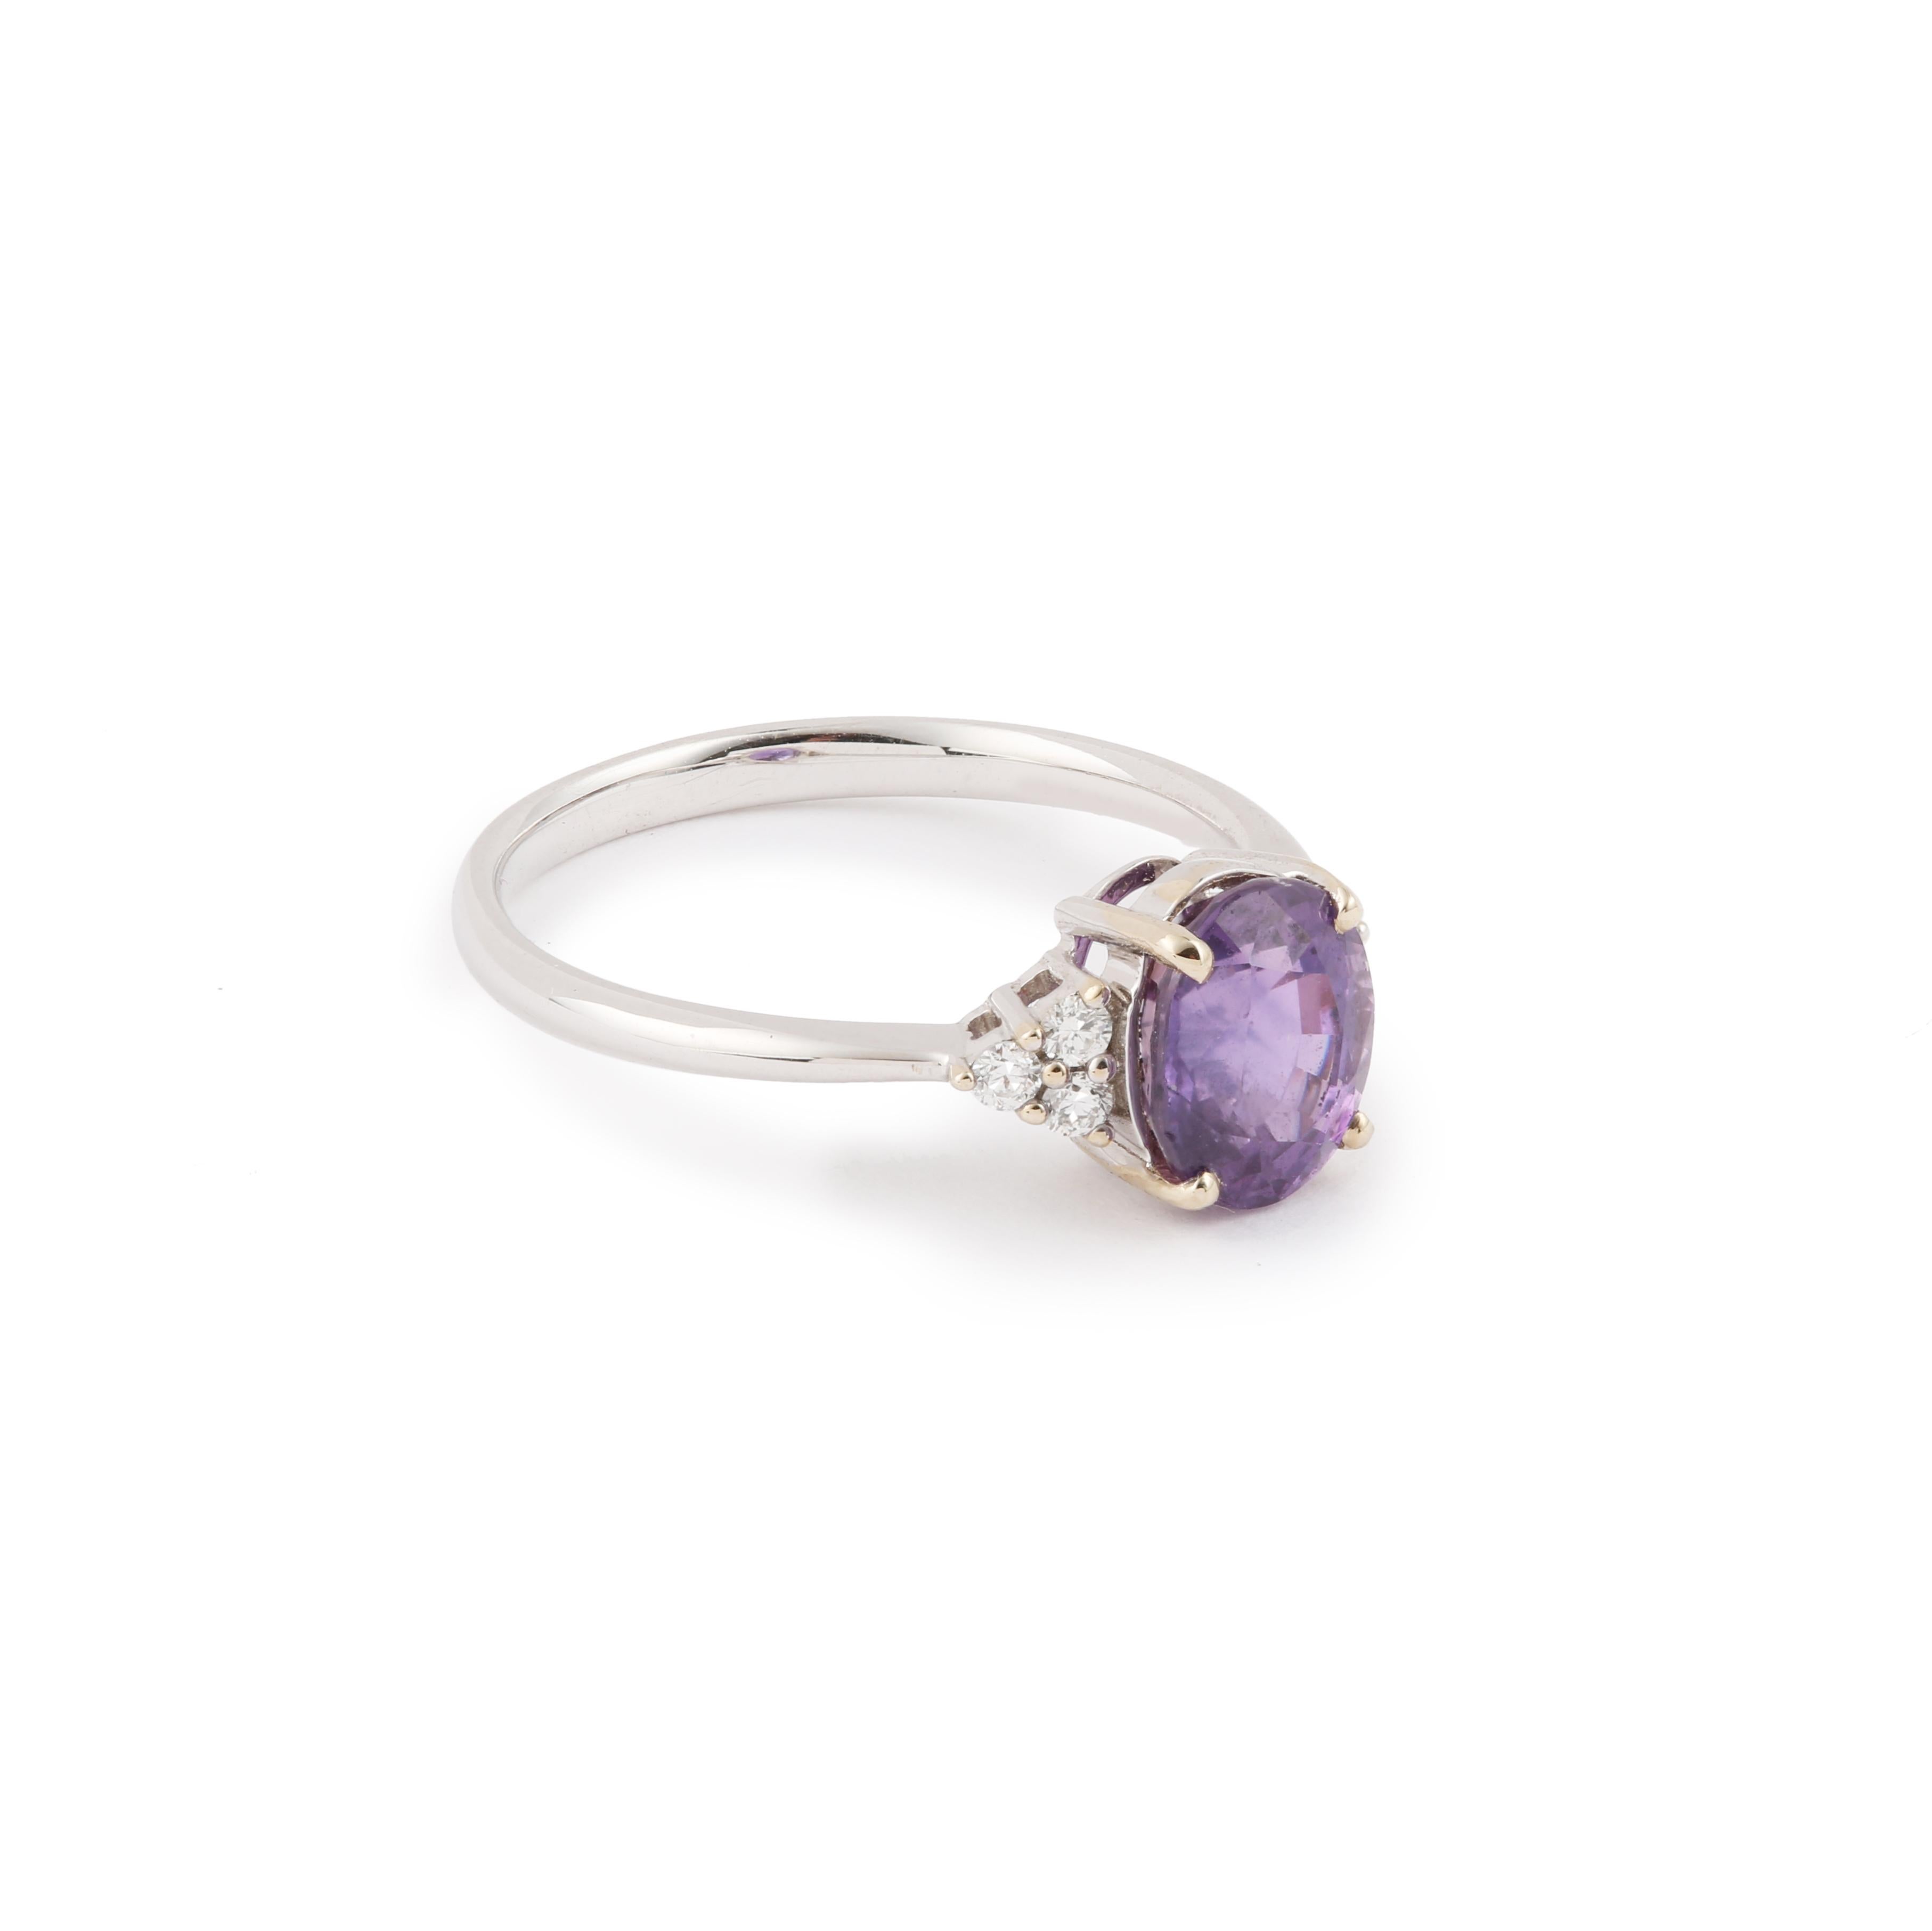 Ring aus Weißgold, besetzt mit einem violetten Saphir im Ovalschliff und geschultert mit Diamanten.

Gewicht des lila Saphirs : 2,07 Karat

Gesamtgewicht der Diamanten: 0,11 Karat

Abmessungen: 7,75 x 12,77 x 5,43 mm (0,305 x 0,502 x 0,214